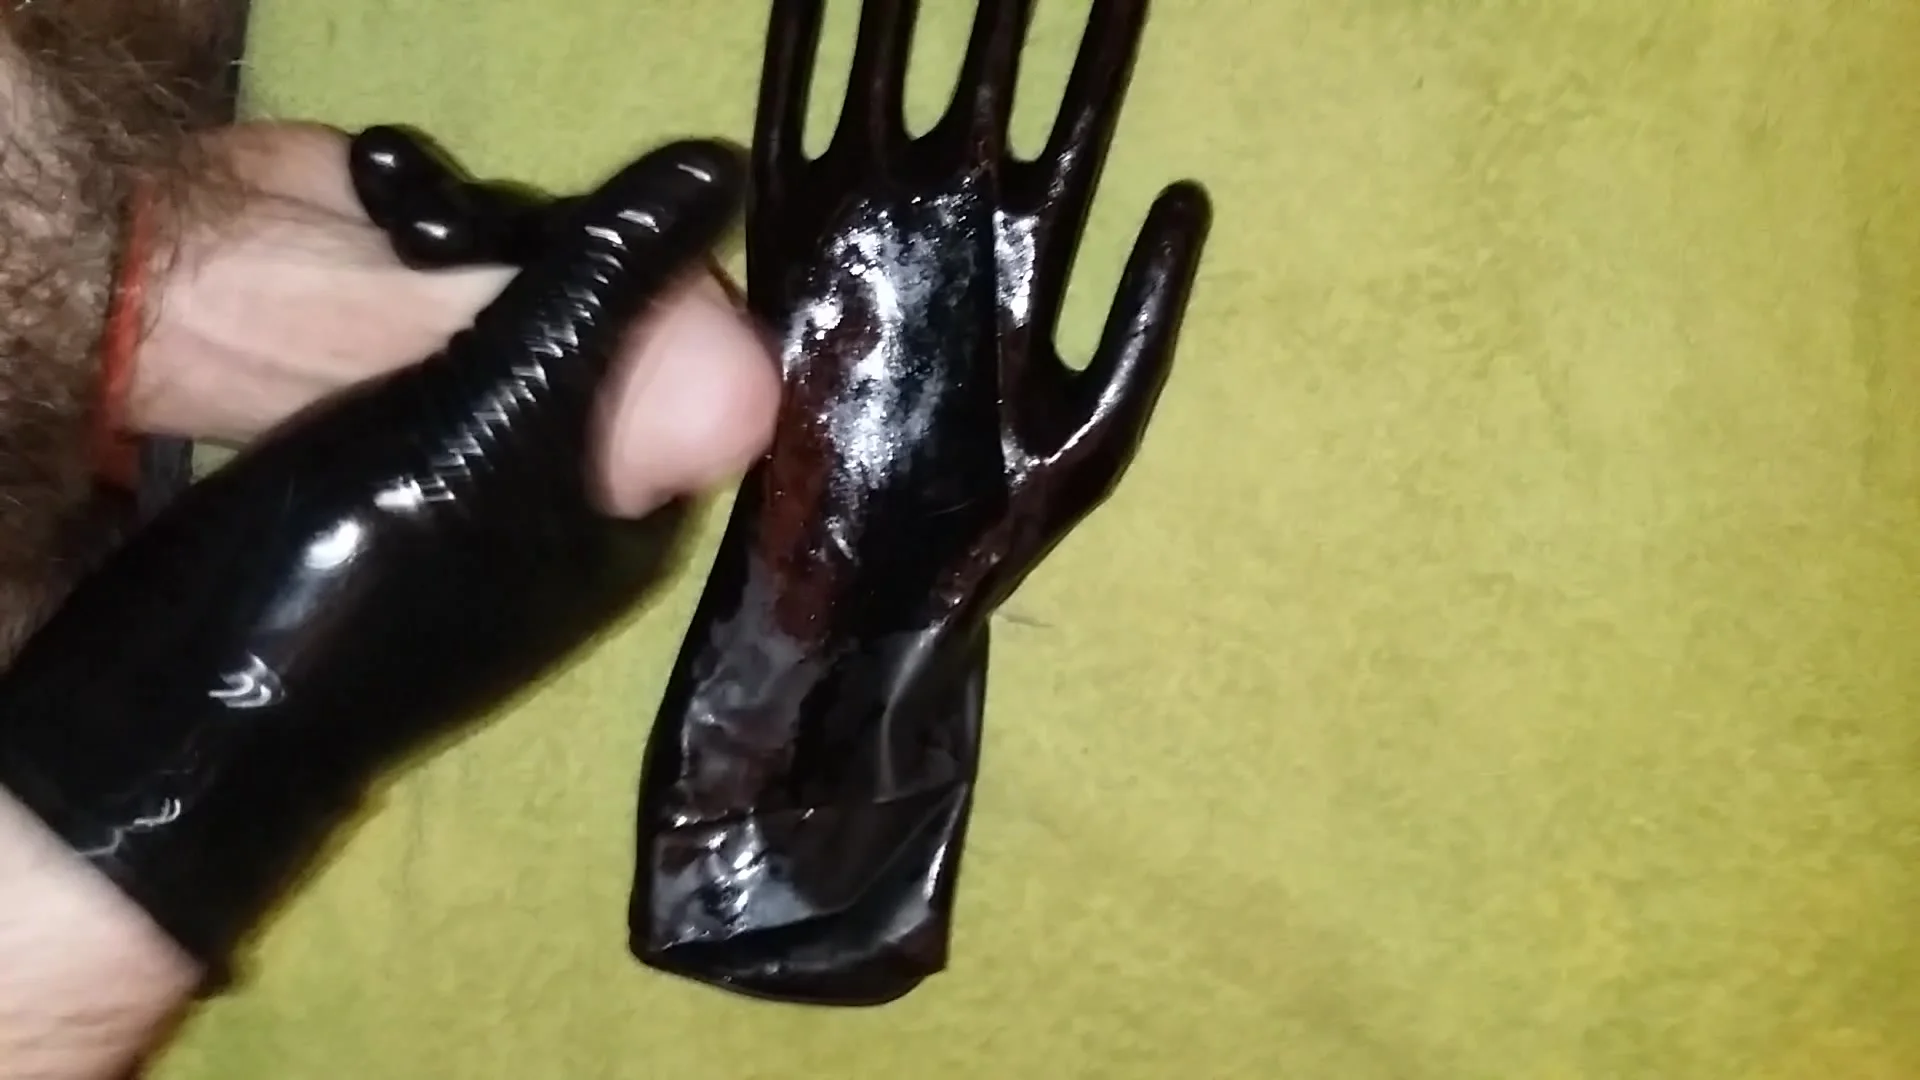 Black Gloves Cum - Jerking in Black Latex Gloves - No Cum - ThisVid.com